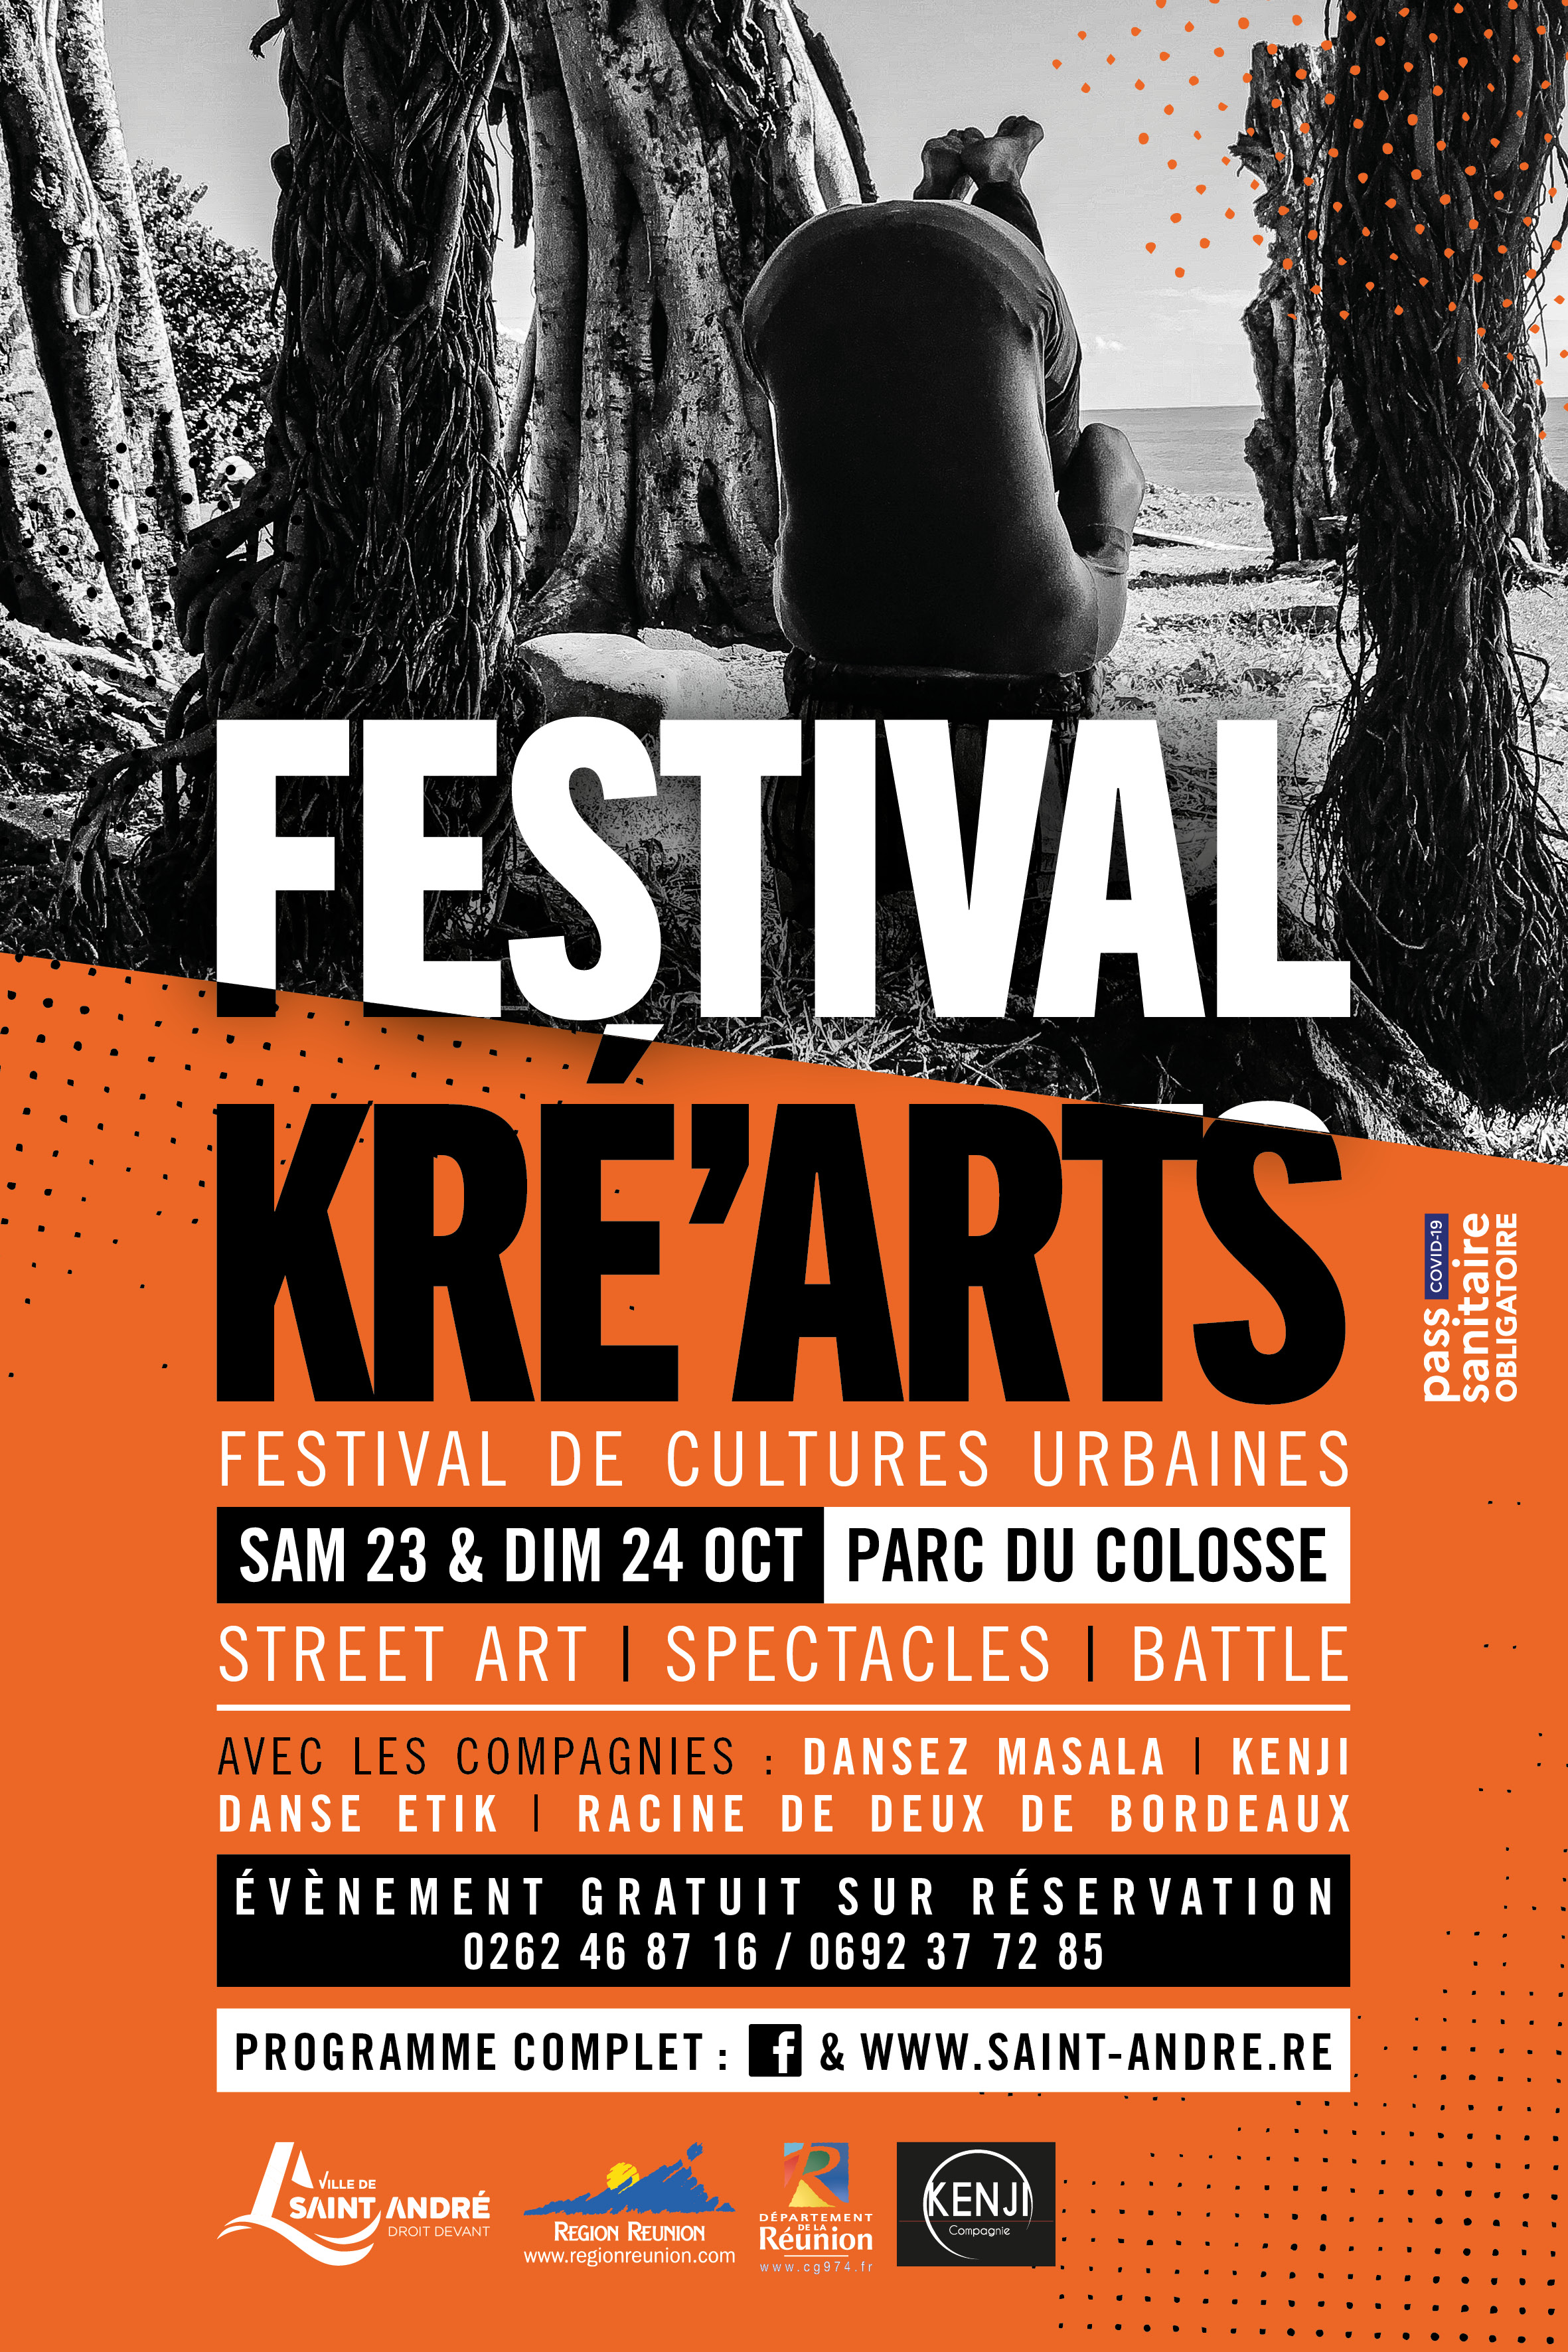 Le street art joue les prolongations à St-André avec le Festival Kré'Arts